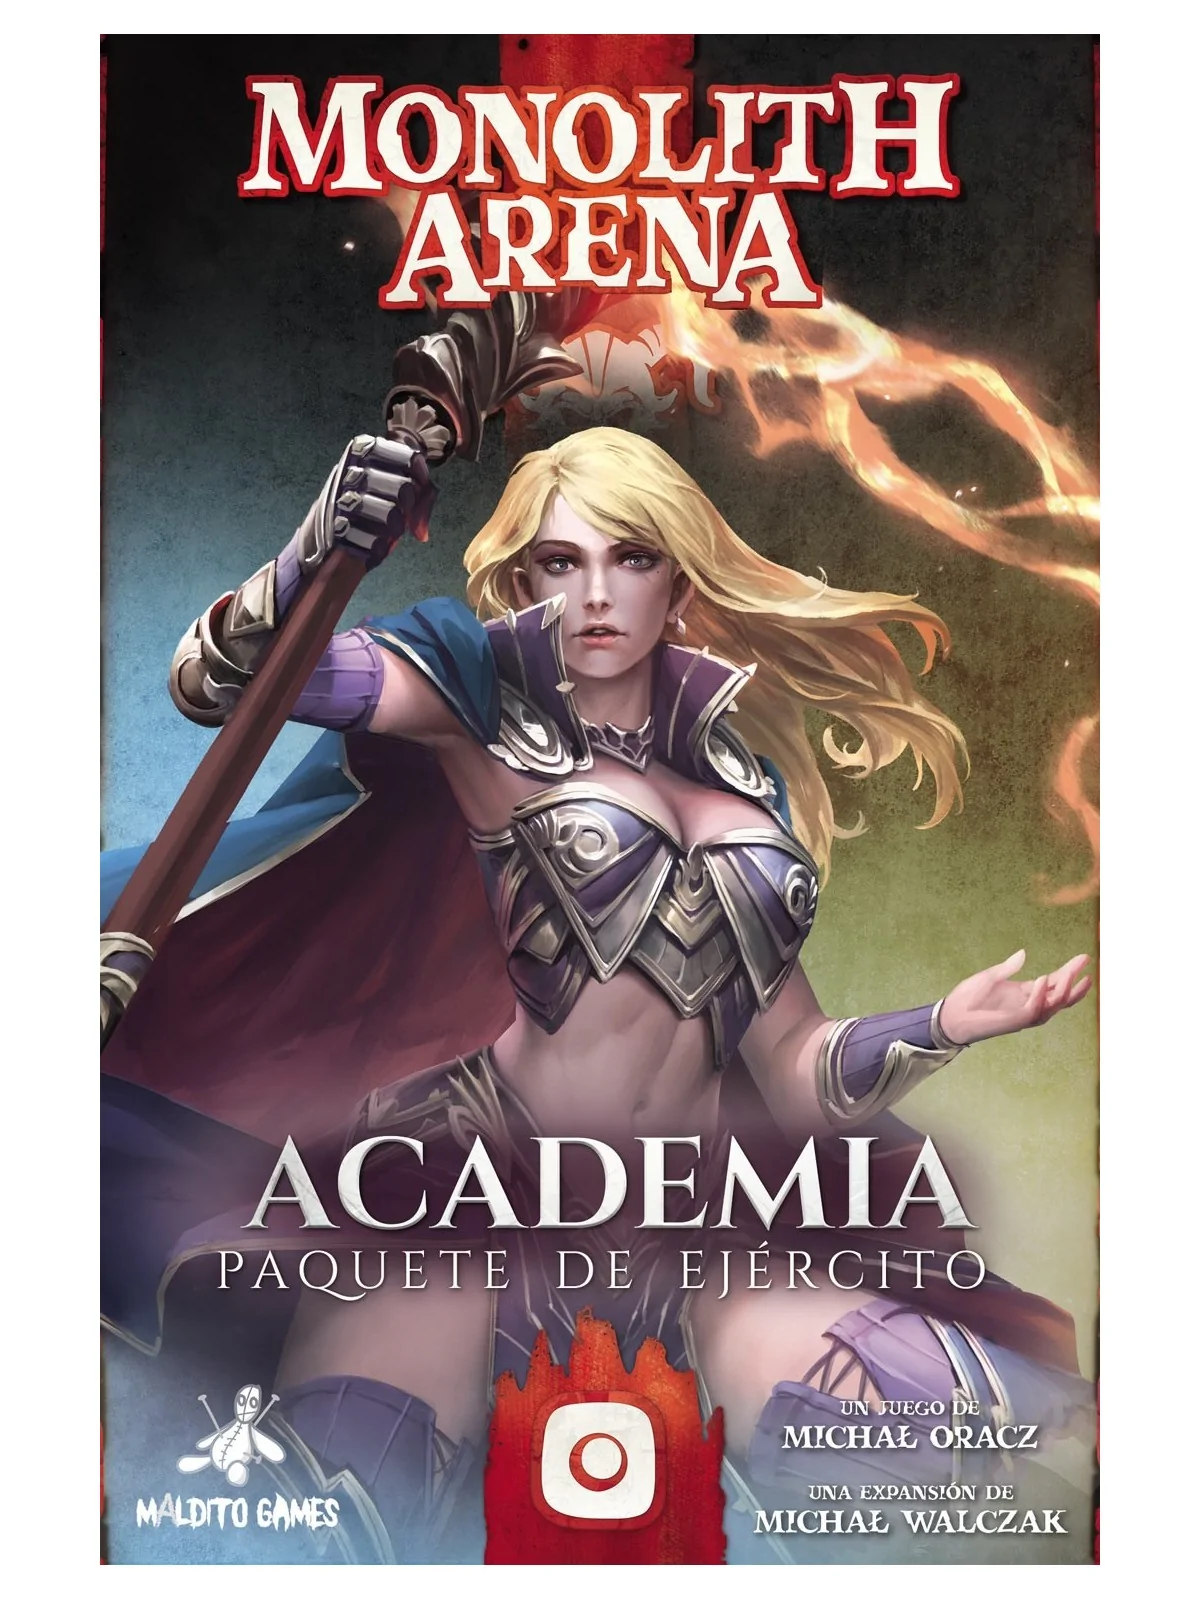 Comprar Monolith Arena: Academia barato al mejor precio 10,80 € de Mal